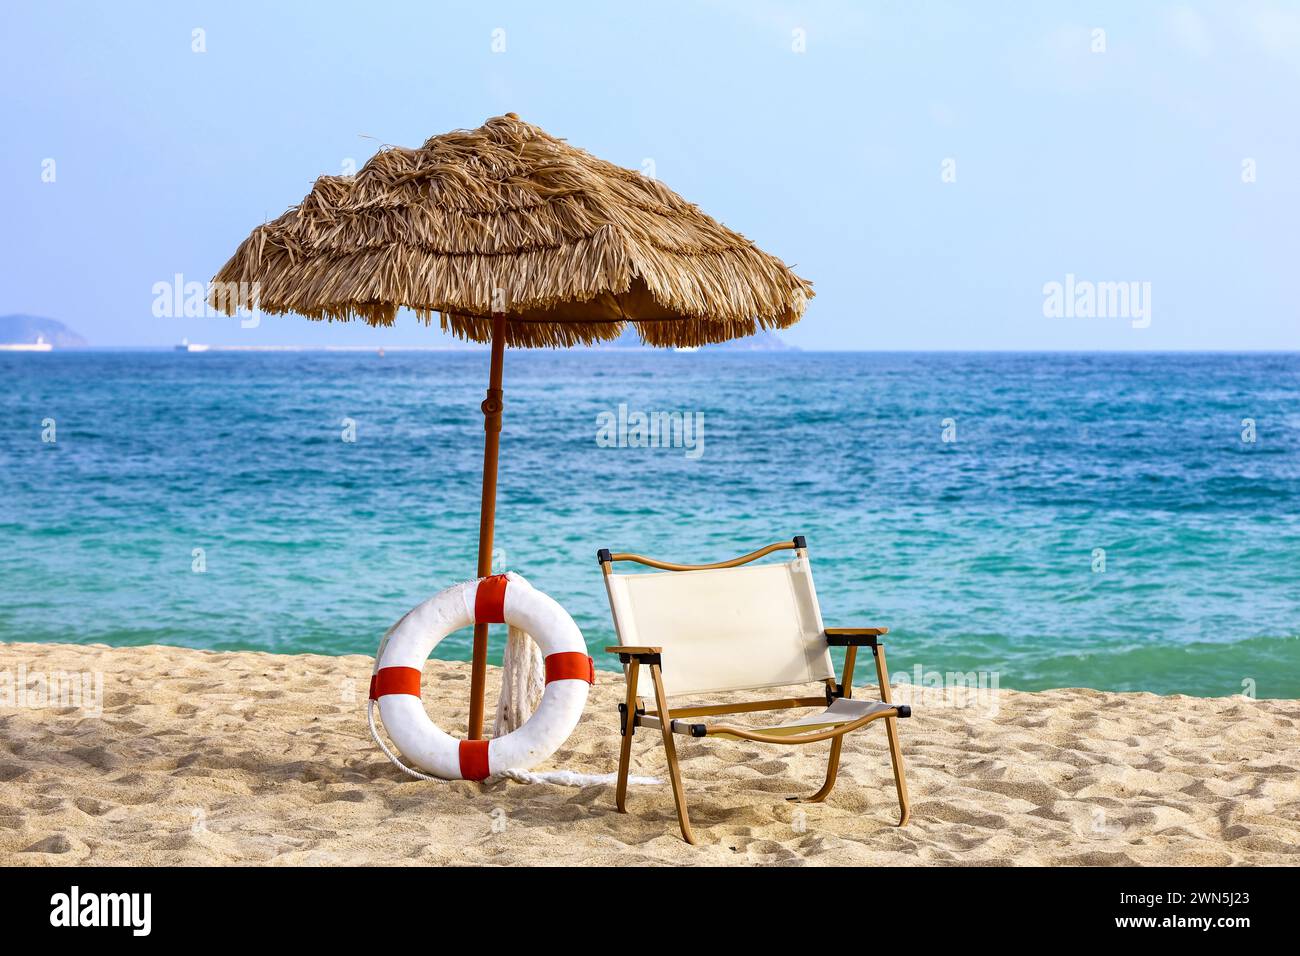 Plage de sable tropical, vue sur le parasol, anneau de vie et chaise sur la station balnéaire. Contexte pour les vacances et les voyages Banque D'Images